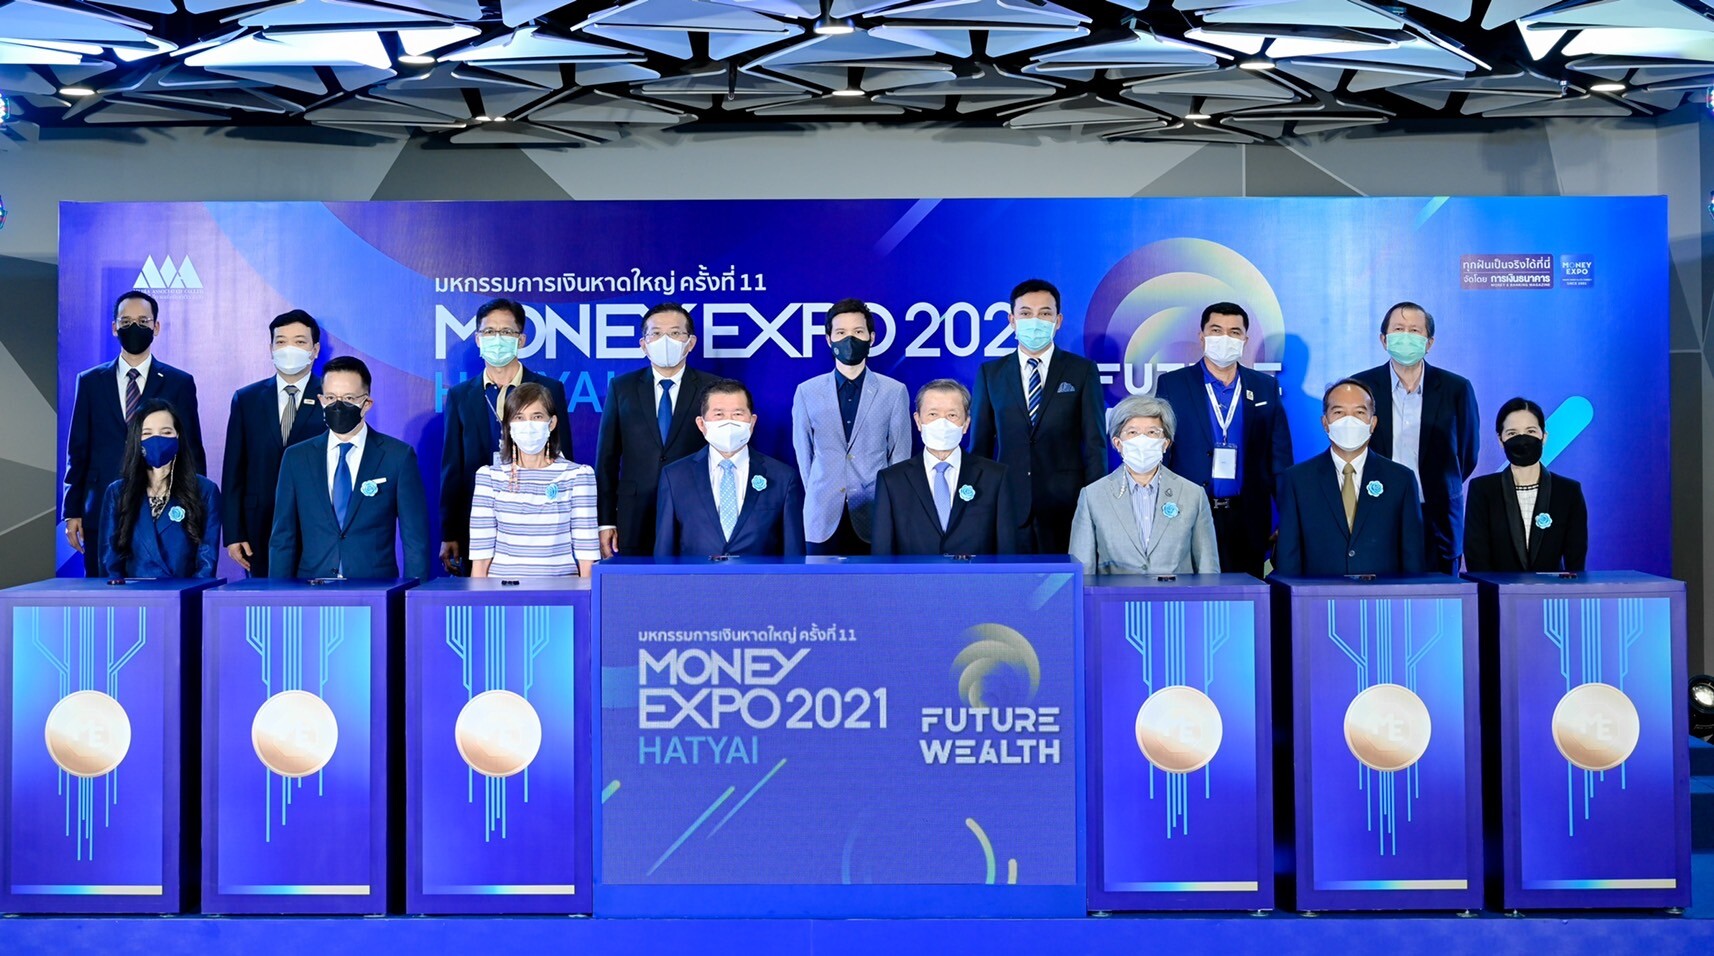 เริ่มแล้ว Money Expo Hatyai 2021 แบงก์ ประกัน บล. บลจ. ทุ่มโปรแรงลงใต้ กู้ฟื้นฟูธุรกิจดอกเบี้ย 2%